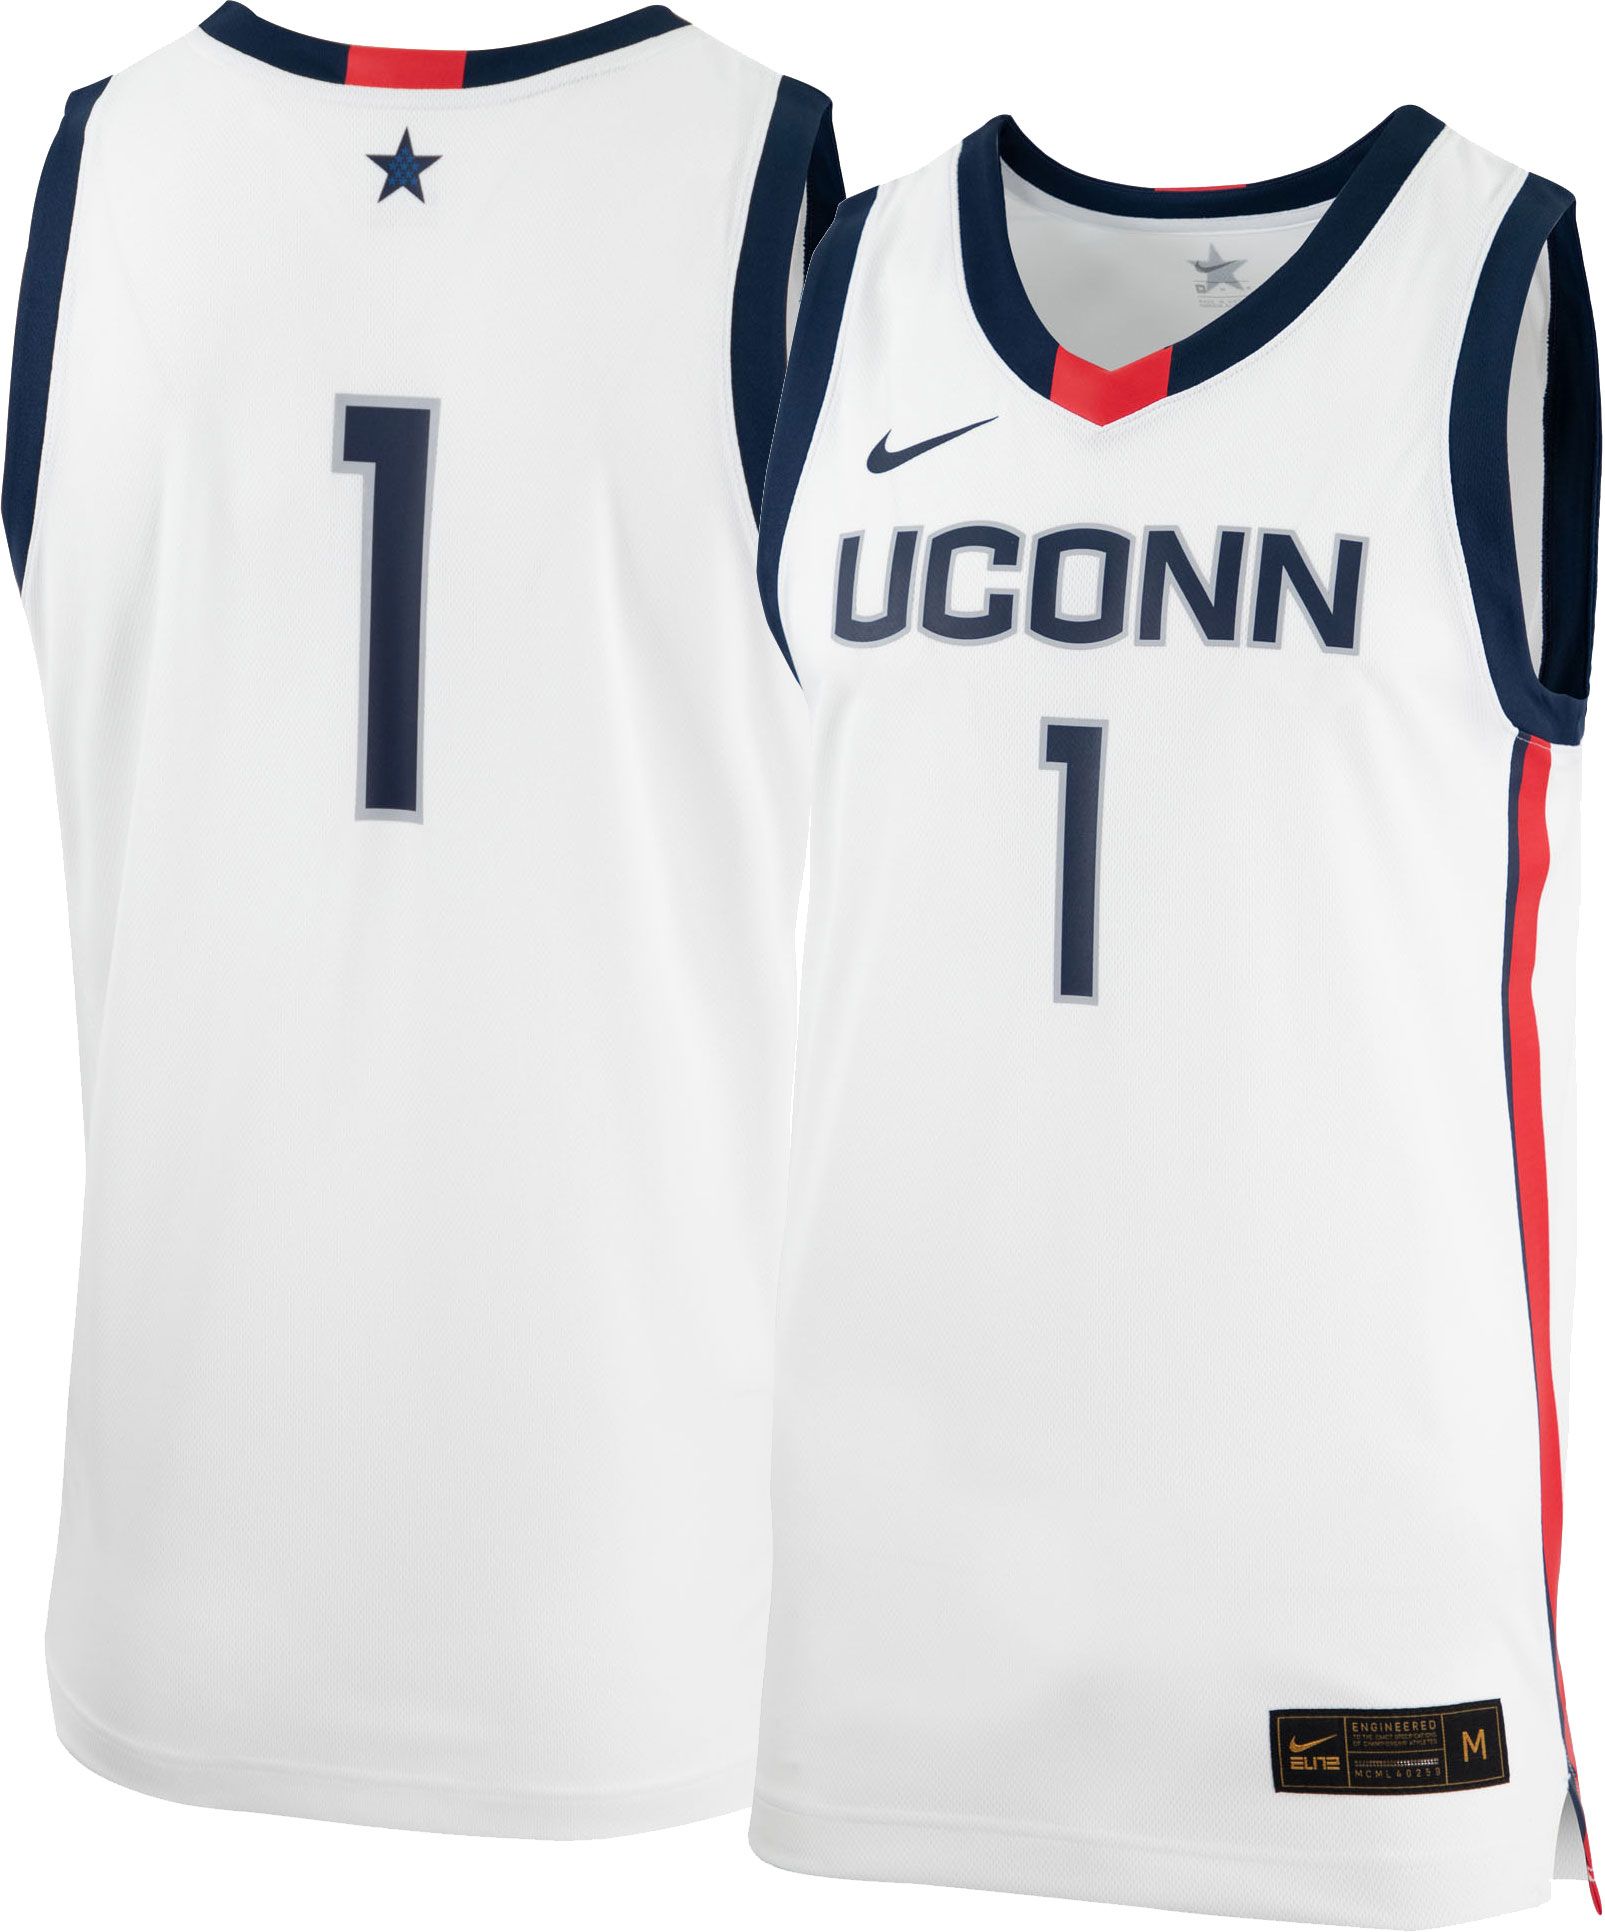 uconn women's basketball jersey